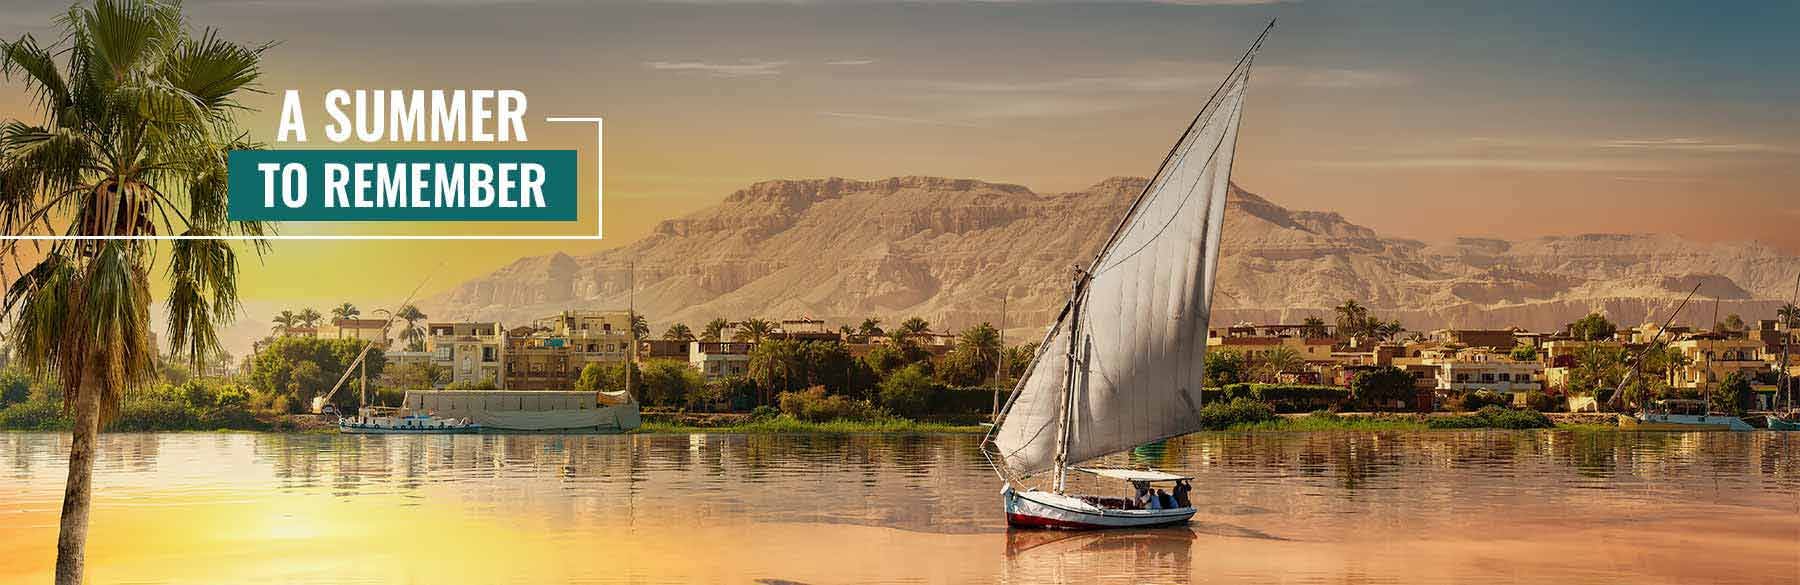 egypt summer